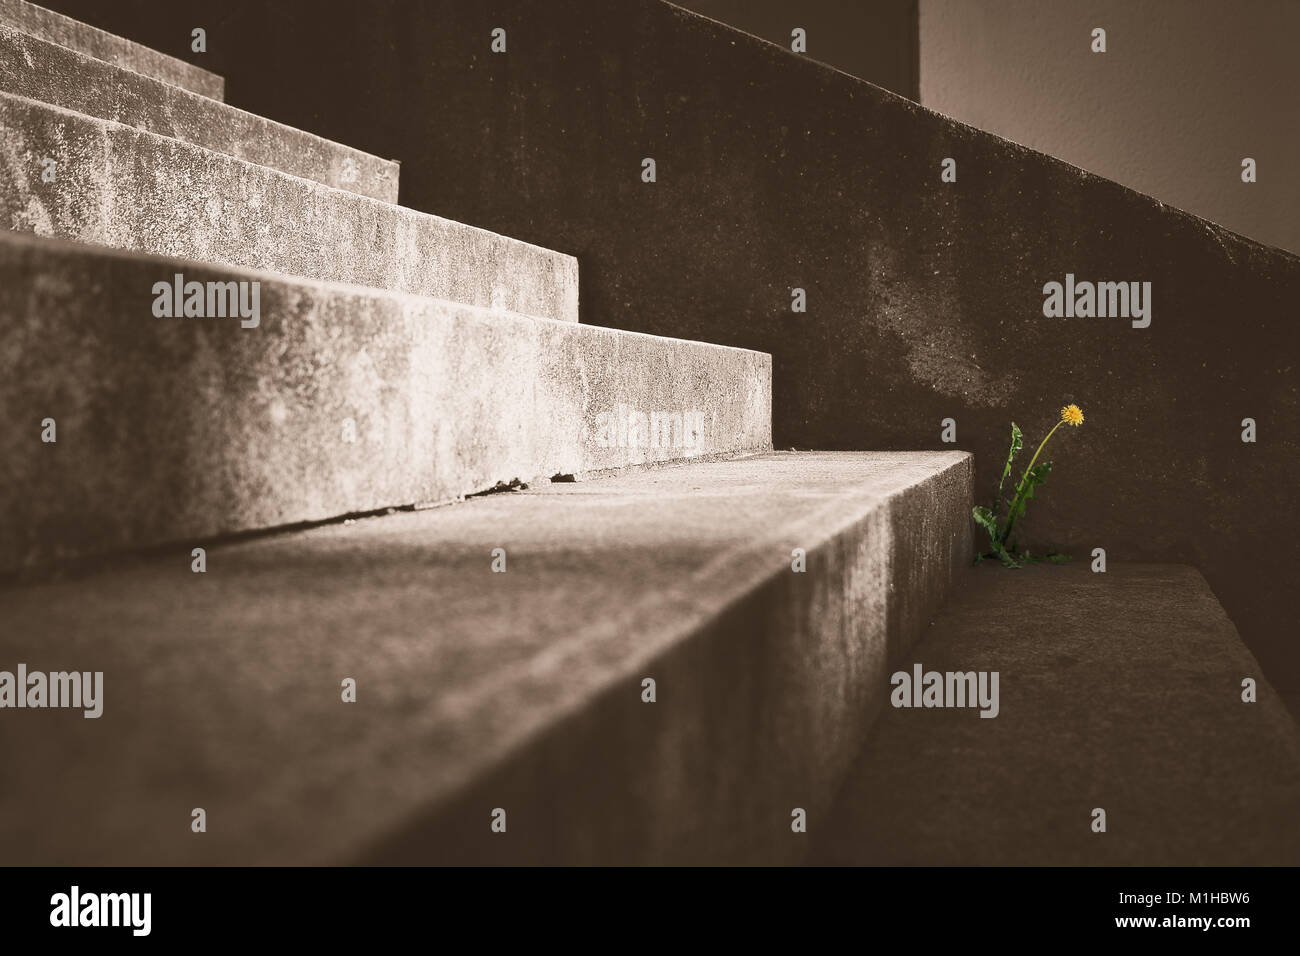 Das künstliche Bild von einem einsamen Löwenzahn auf dem Beton Treppe. Die Blume ist im Bild isoliert. Stockfoto